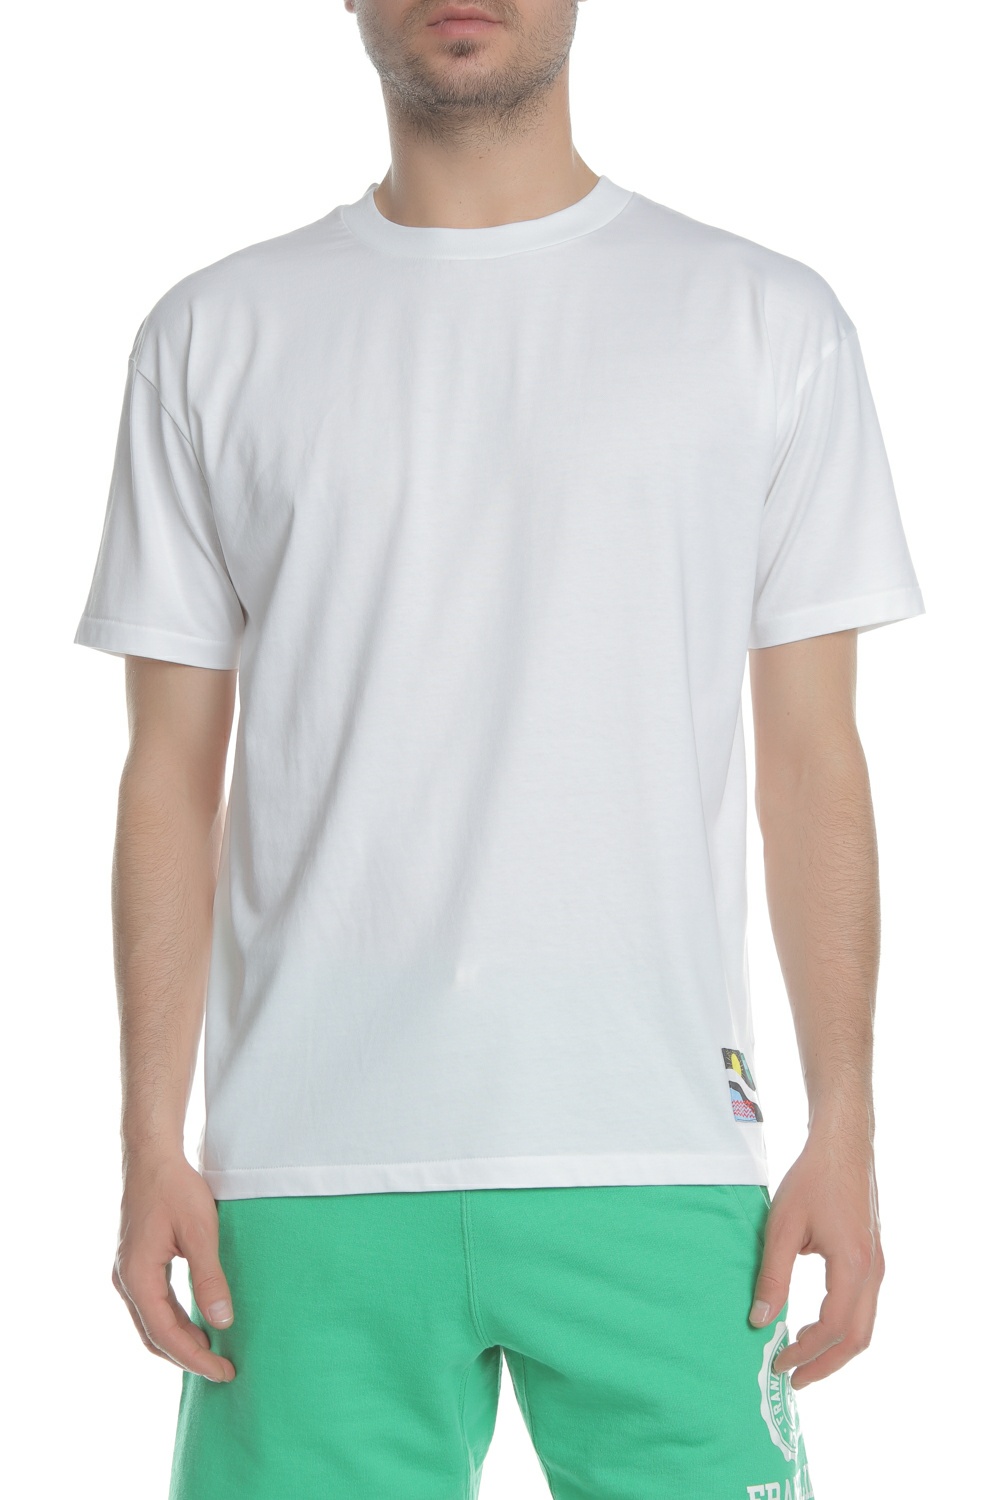 SCOTCH & SODA - Ανδρική κοντομάνικη μπλούζα SCOTCH & SODA λευκή Ανδρικά/Ρούχα/Μπλούζες/Κοντομάνικες